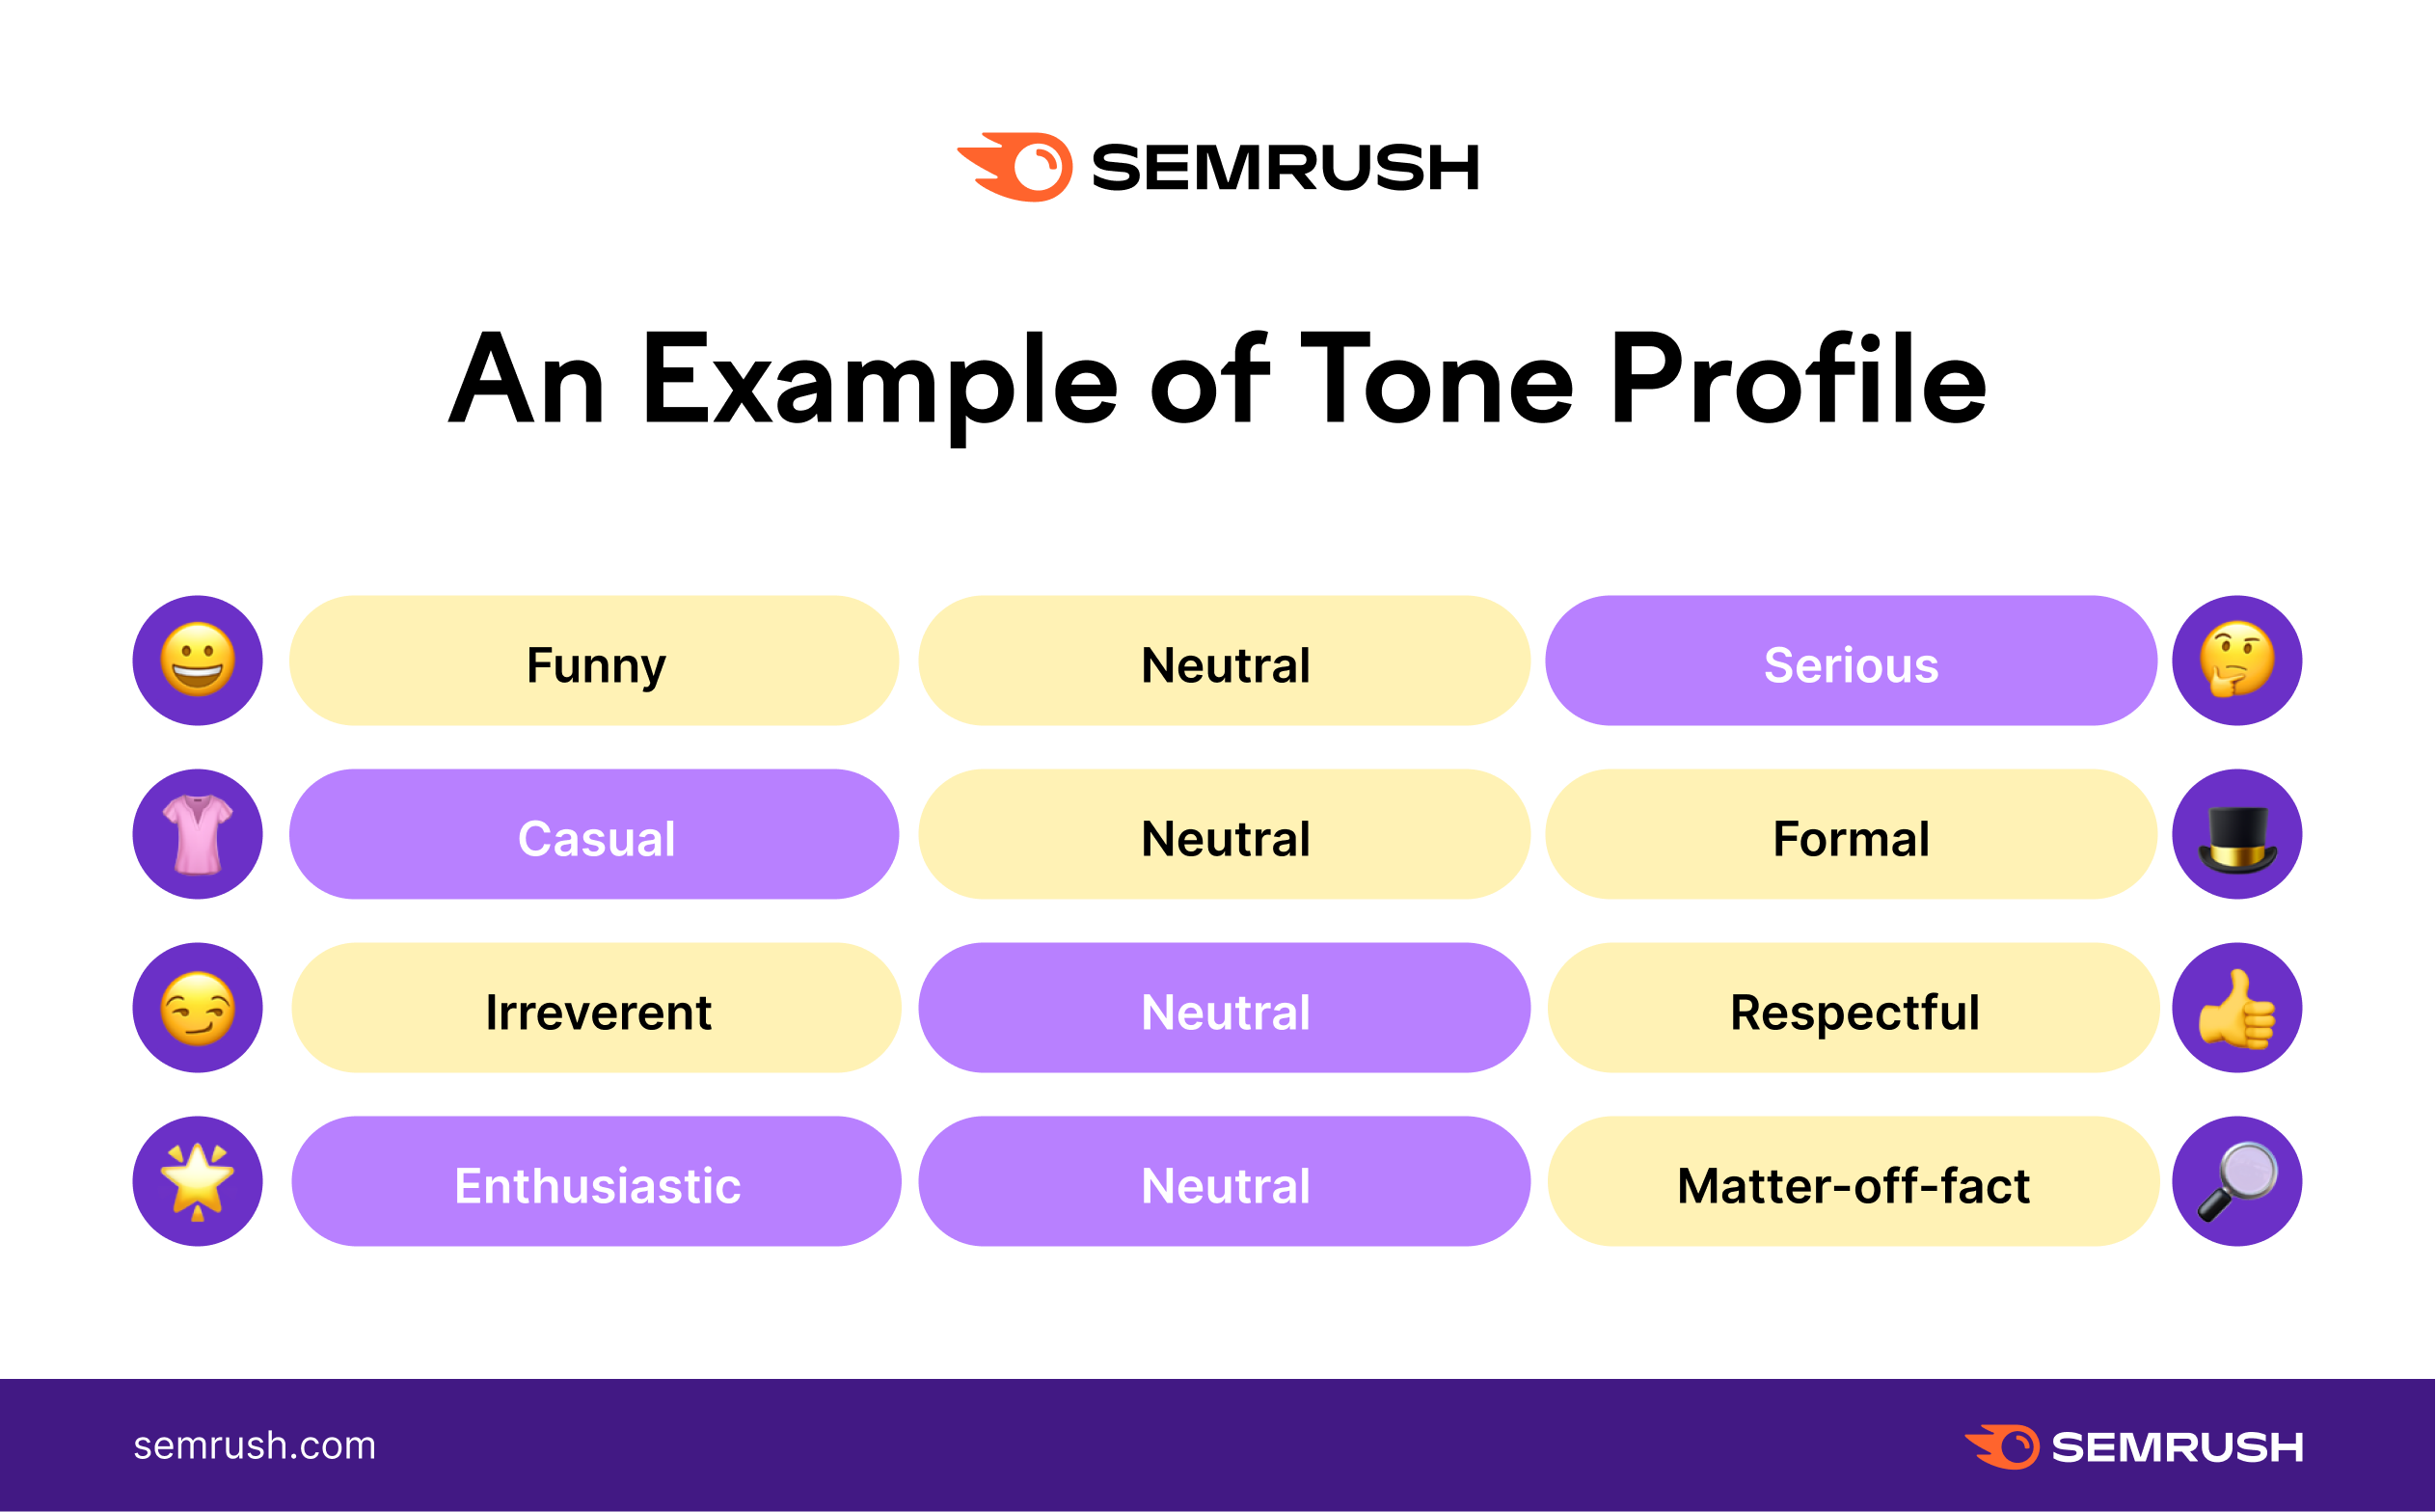 Le dimensioni del tone of voice dal sito Semrush